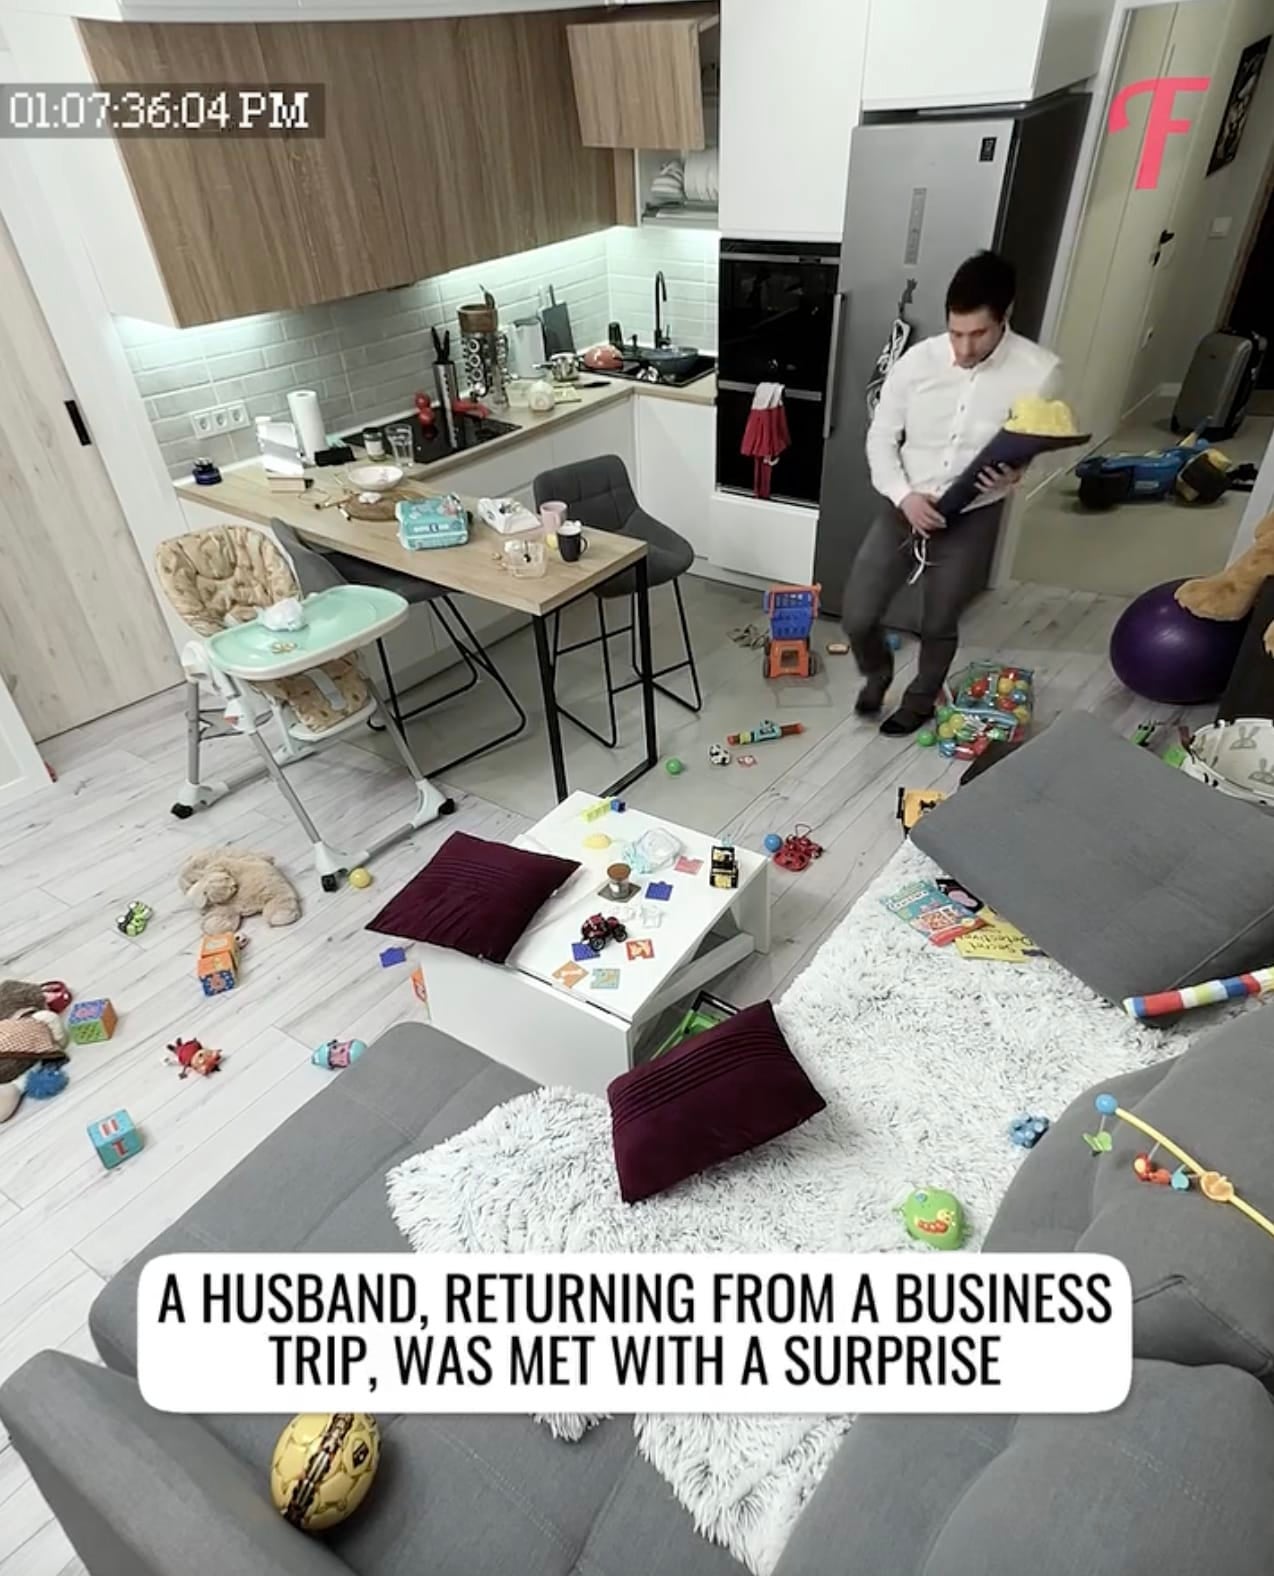 สามีตัวอย่าง ช่วยภรรยาเก็บกวาดบ้าน